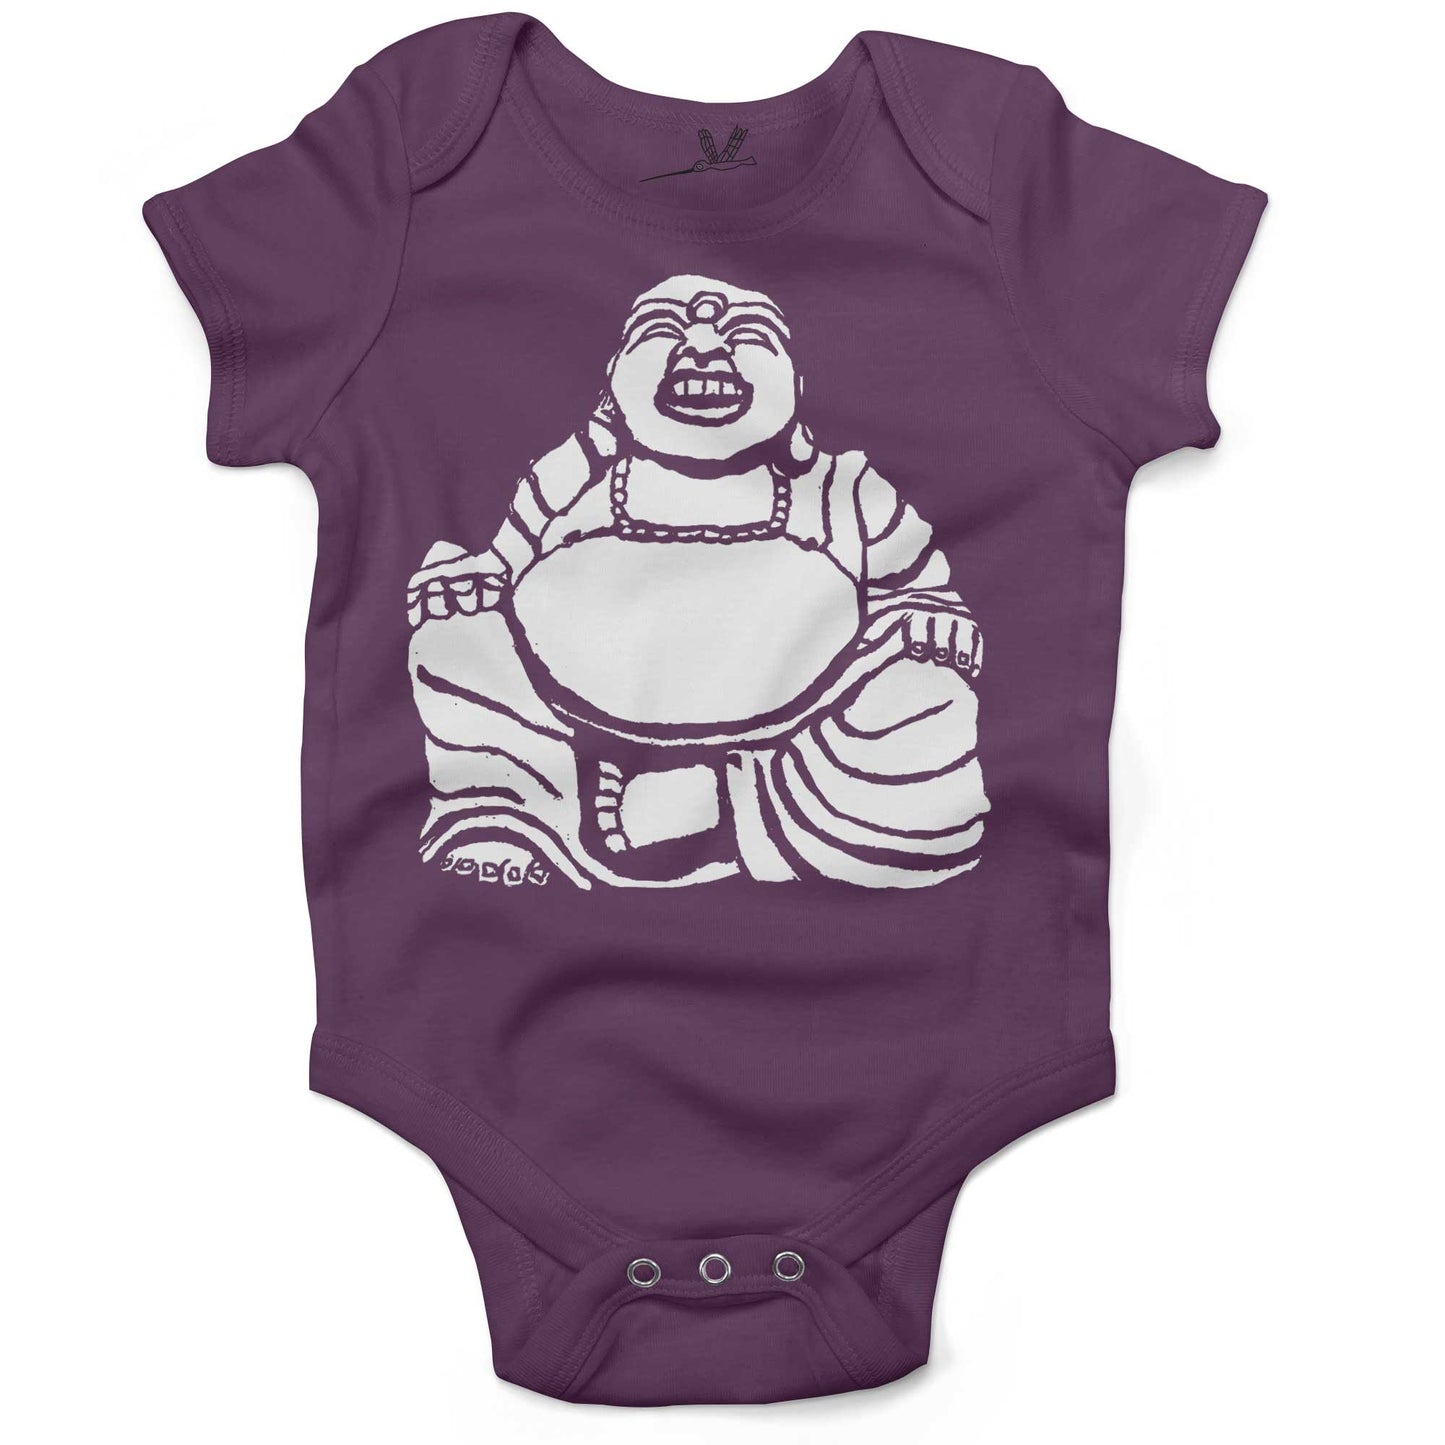 Laughing Buddha Infant Bodysuit or Raglan Baby Tee-Organic Purple-3-6 months